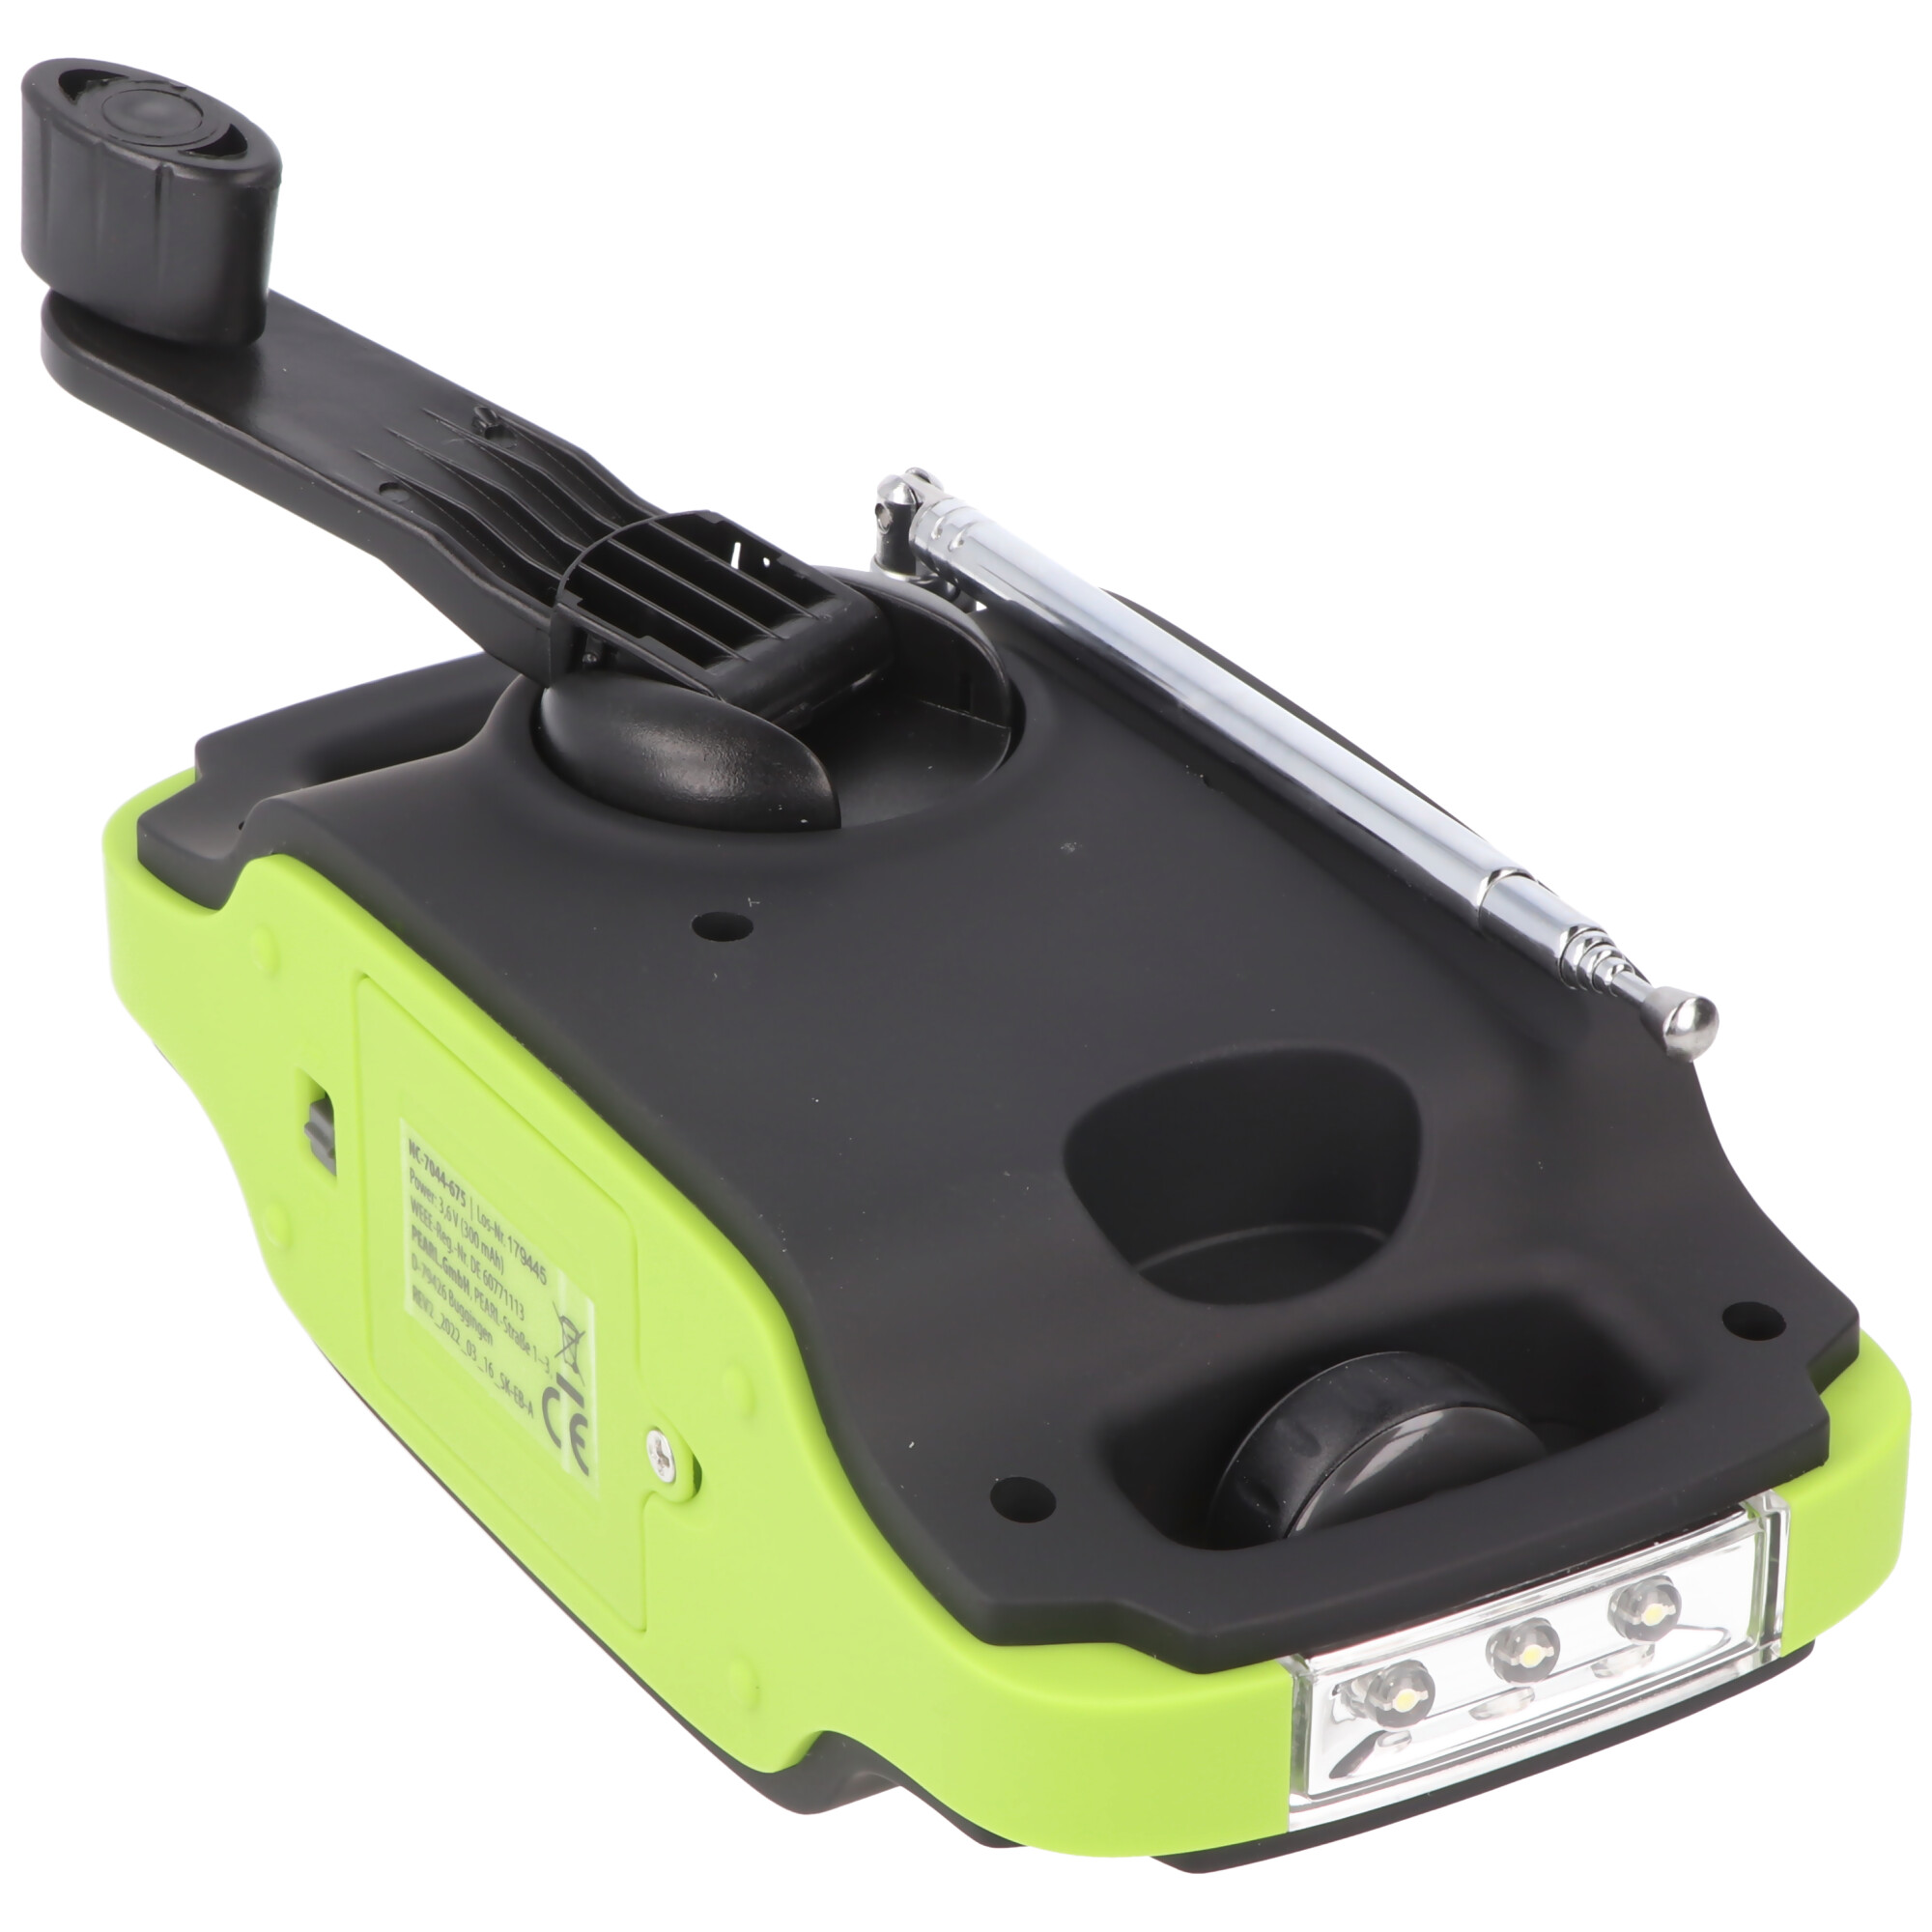 Solar-Dynamo-Koffer-Radio mit LED-Taschenlampe, keine Batterien erforderlich